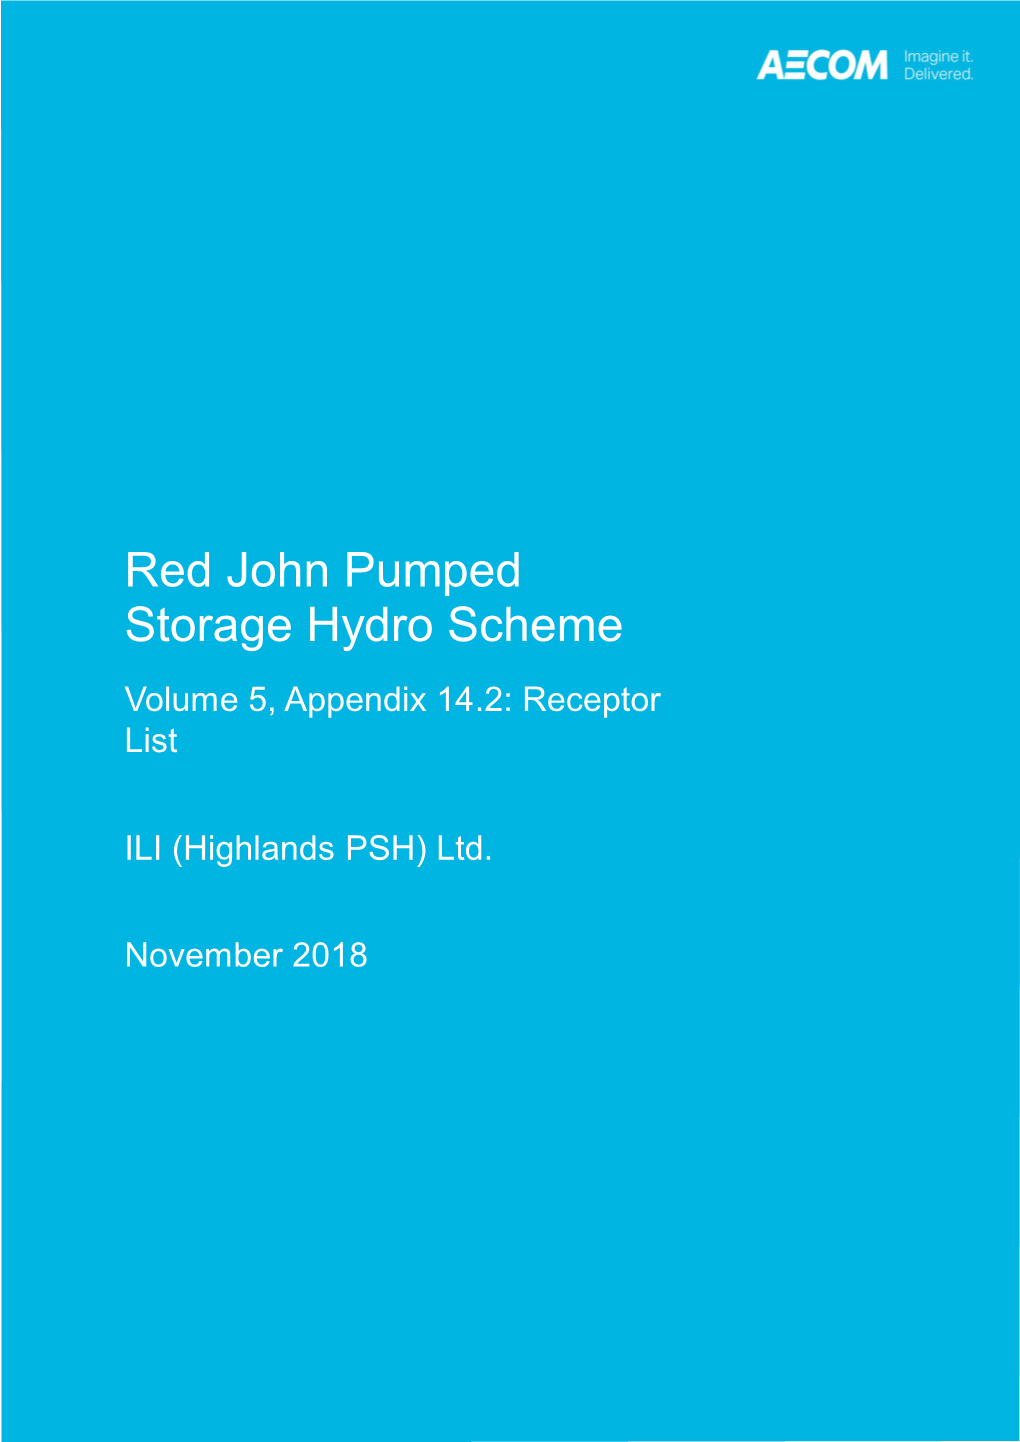 Red John Pumped Storage Hydro Scheme Volume 5, Appendix 14.2: Receptor List